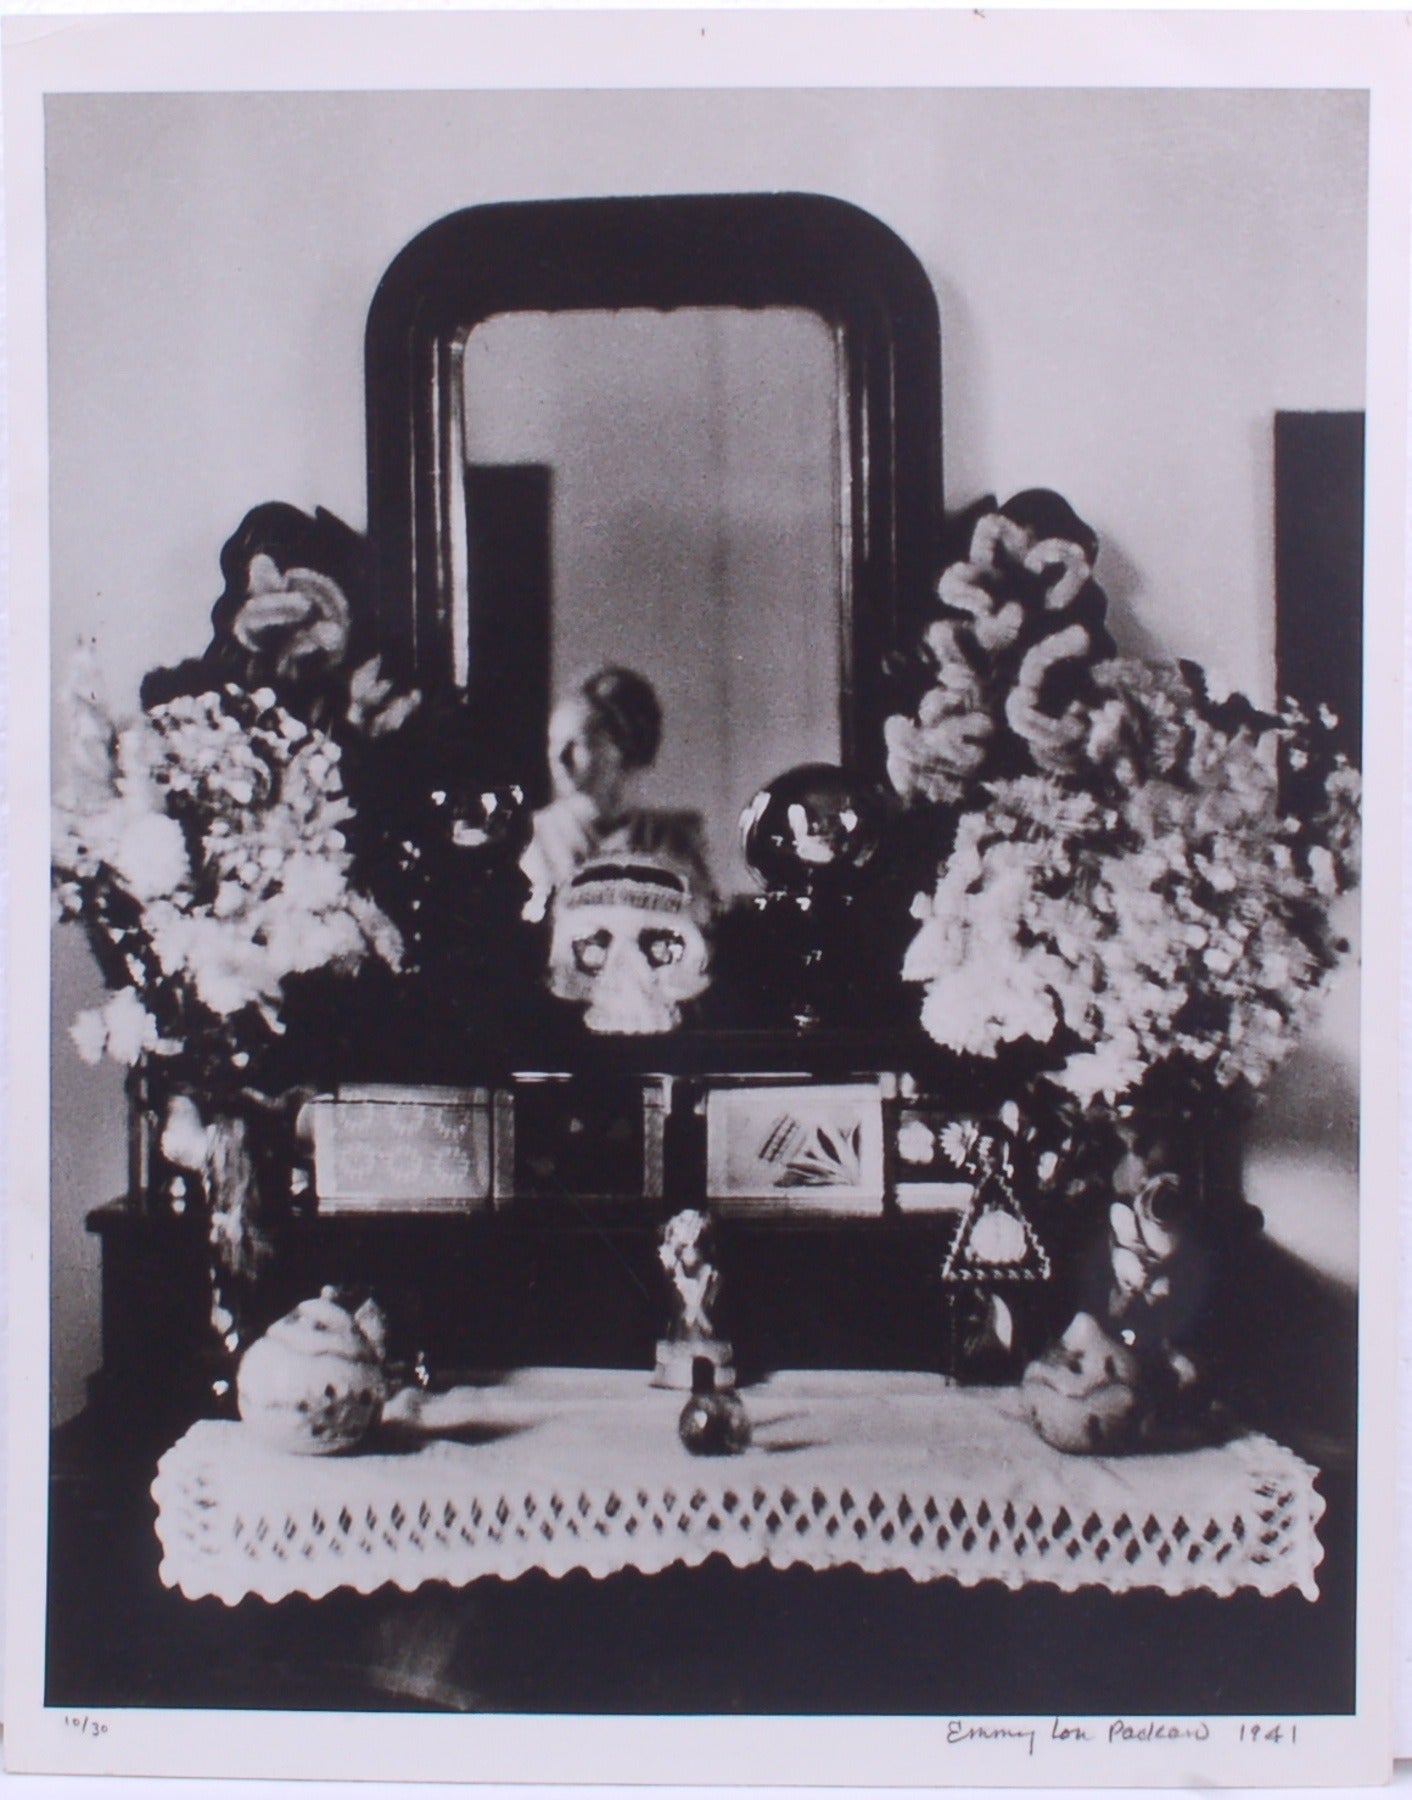 Frida Kahlo's Bedroom Photograph Original Emmy Lou Packard For Sale